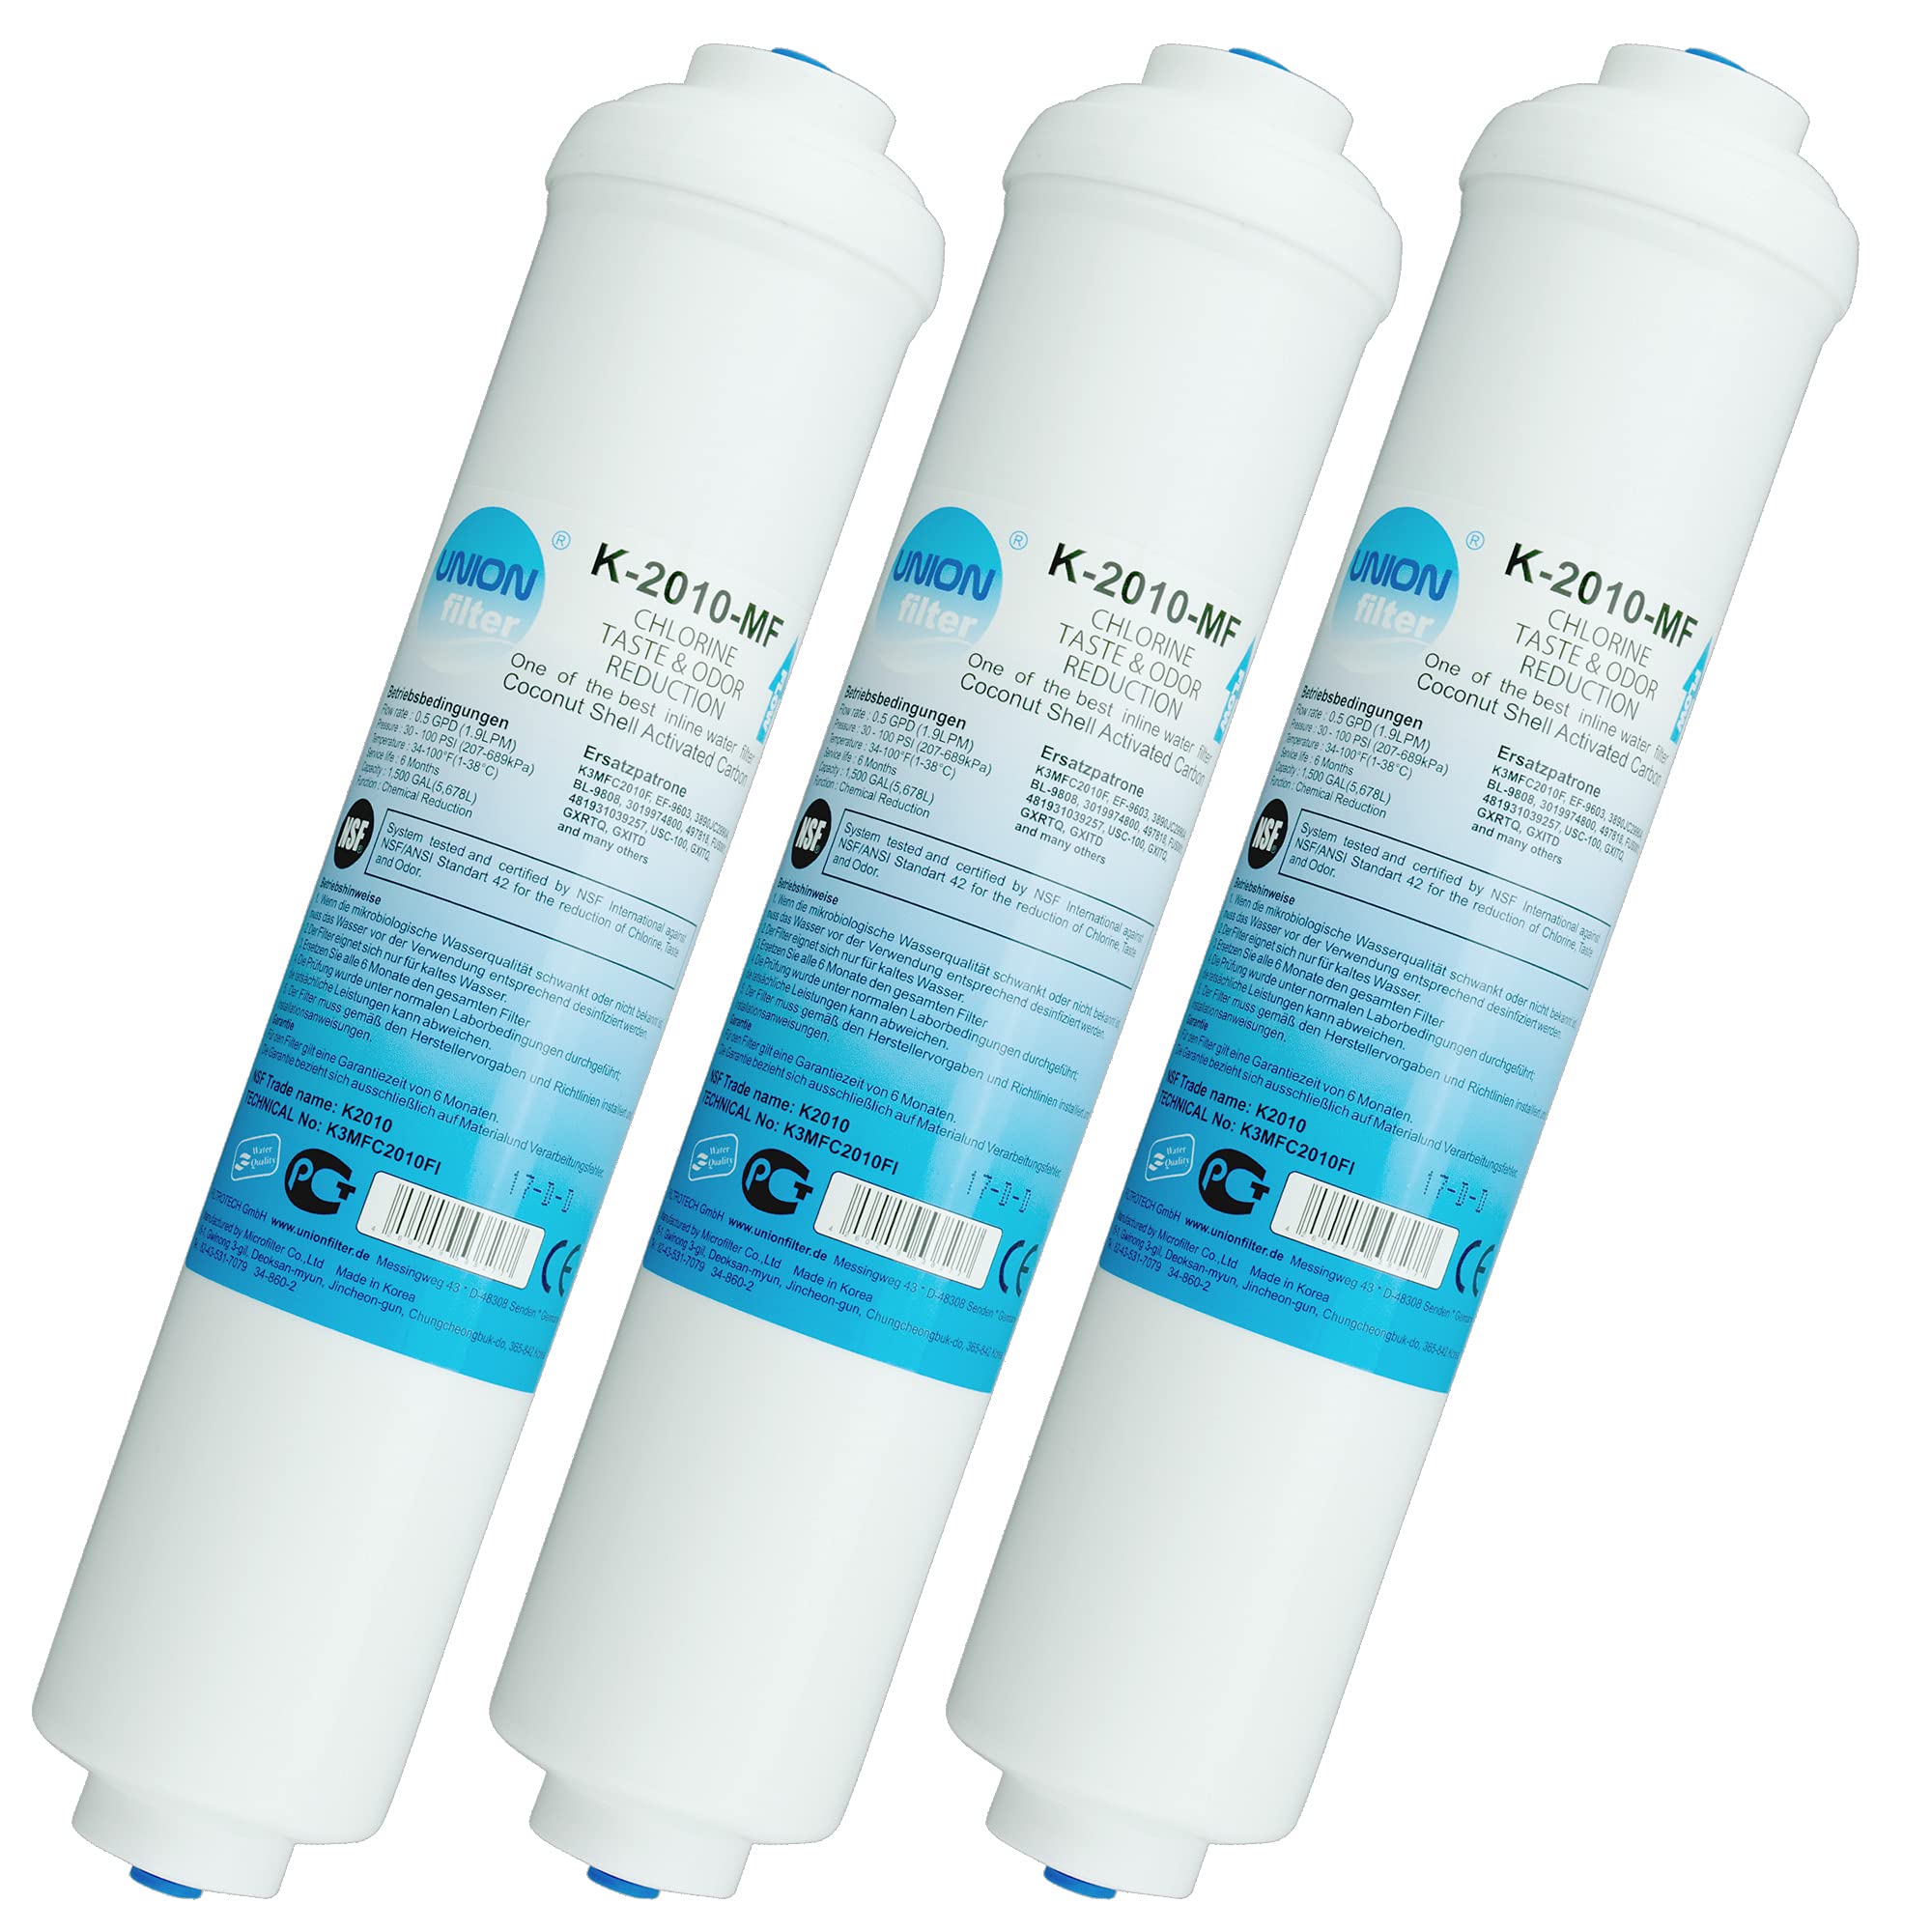 UN-3. Wasserfilter für Samsung LG AEG Simens Haier Bosch Side by Side Kühlschrank, externer Kühlschrankfilter mit integriertem 1/4 Zoll Schlauchanschluss